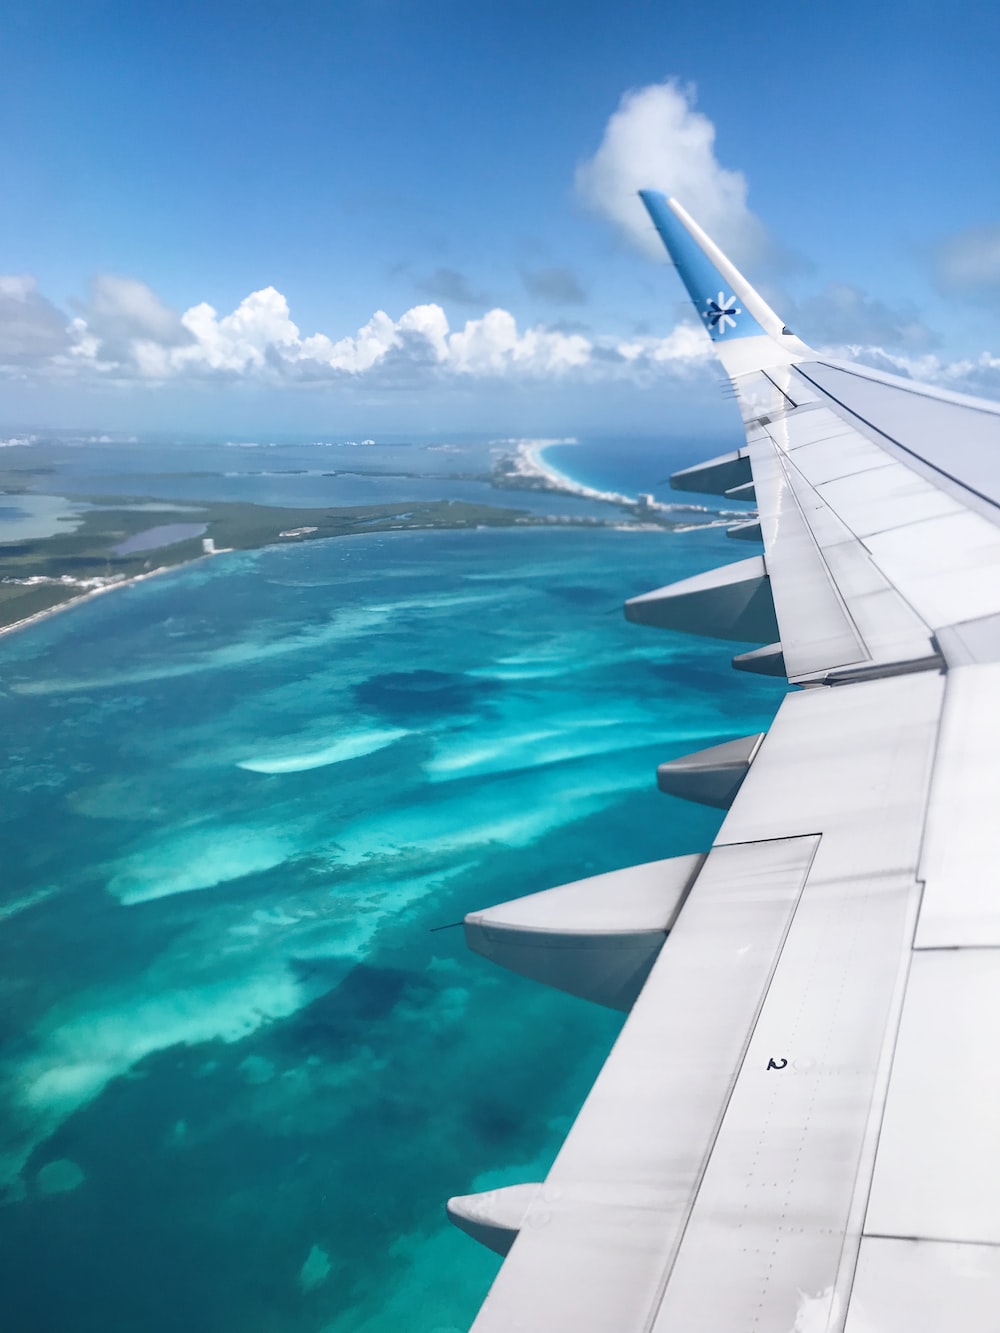  Book Cheap Flights to Cancun - Get the Best Deals Now!